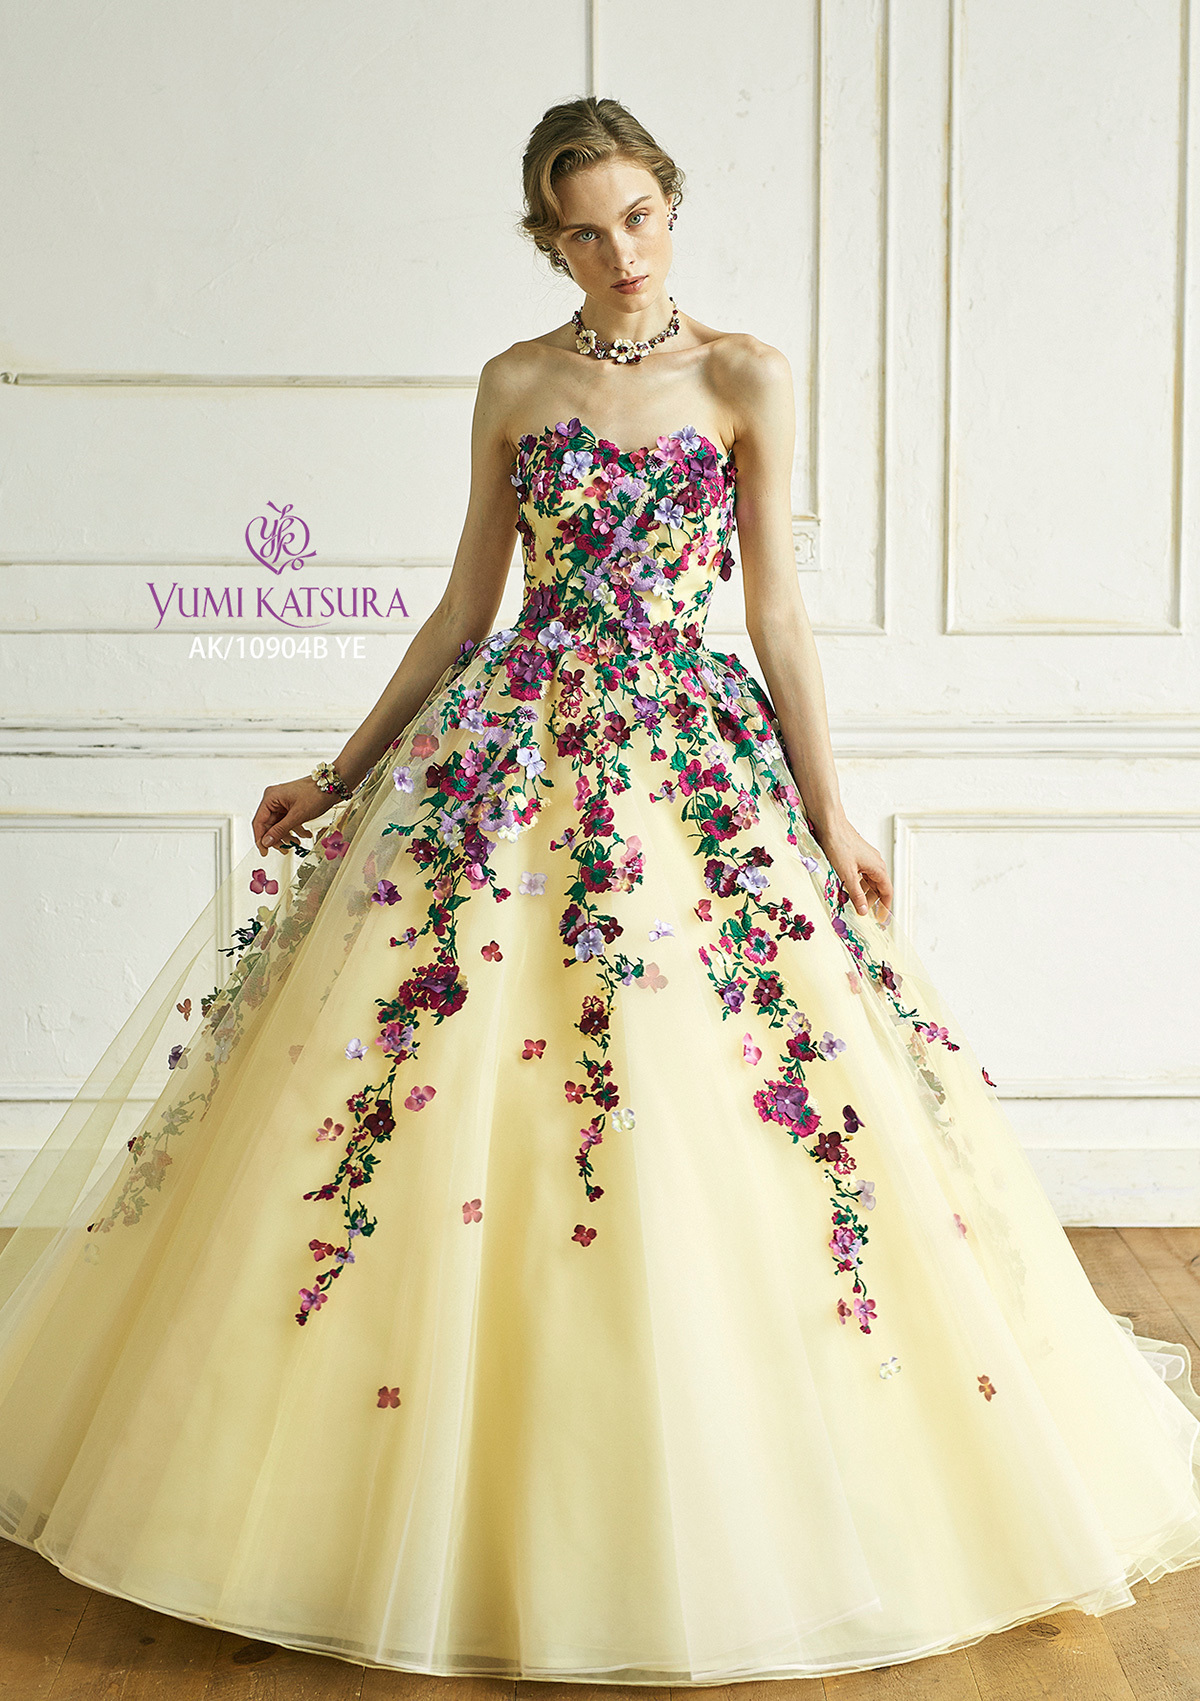 静岡市・富士市・沼津市のドレス専門店フィーノのカラードレス、桂由美AK-10904YEの画像２